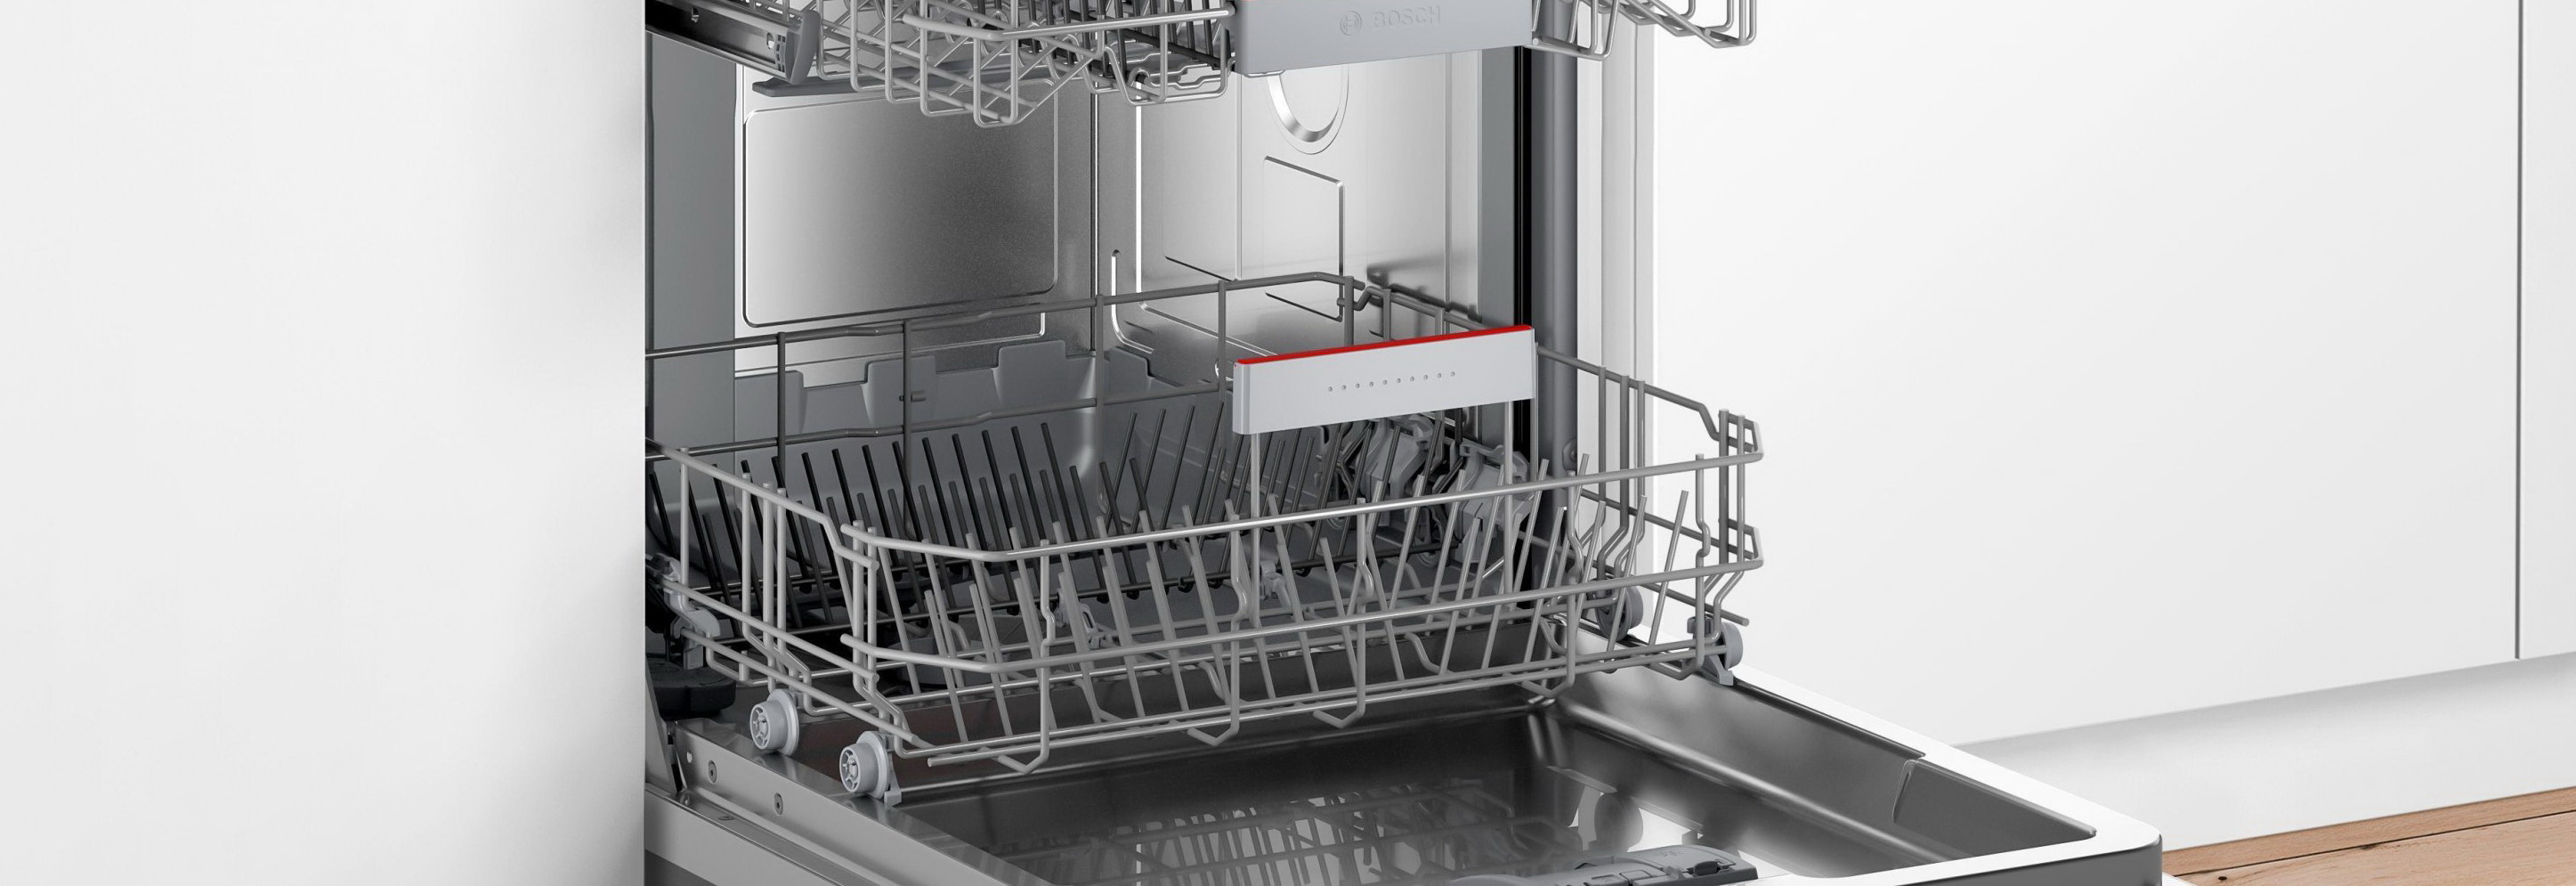 Преимущества посудомоечных машин Bosch